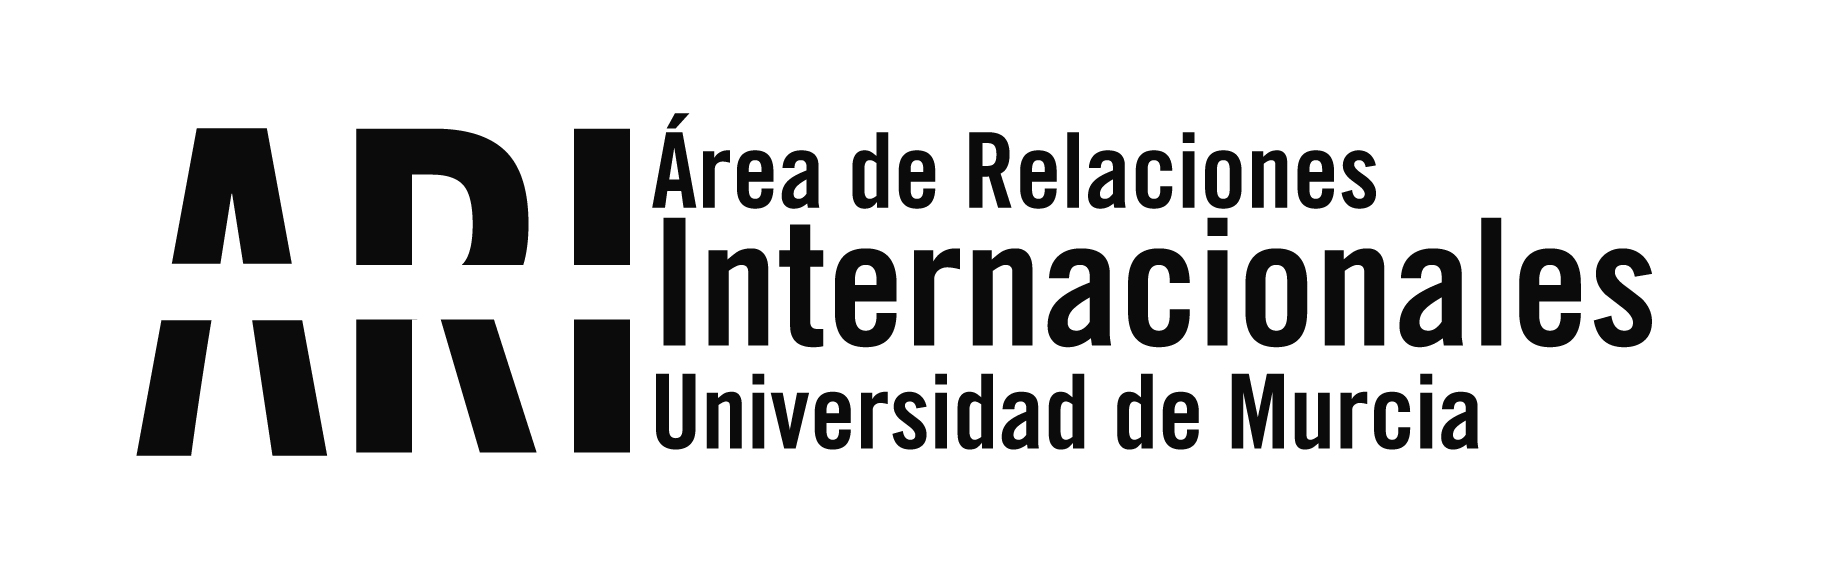 Reunión en Argentina del proyecto Erasmus+ "TIC Cruz del Sur" coordinado por la UMU - Área de Relaciones Internacionales